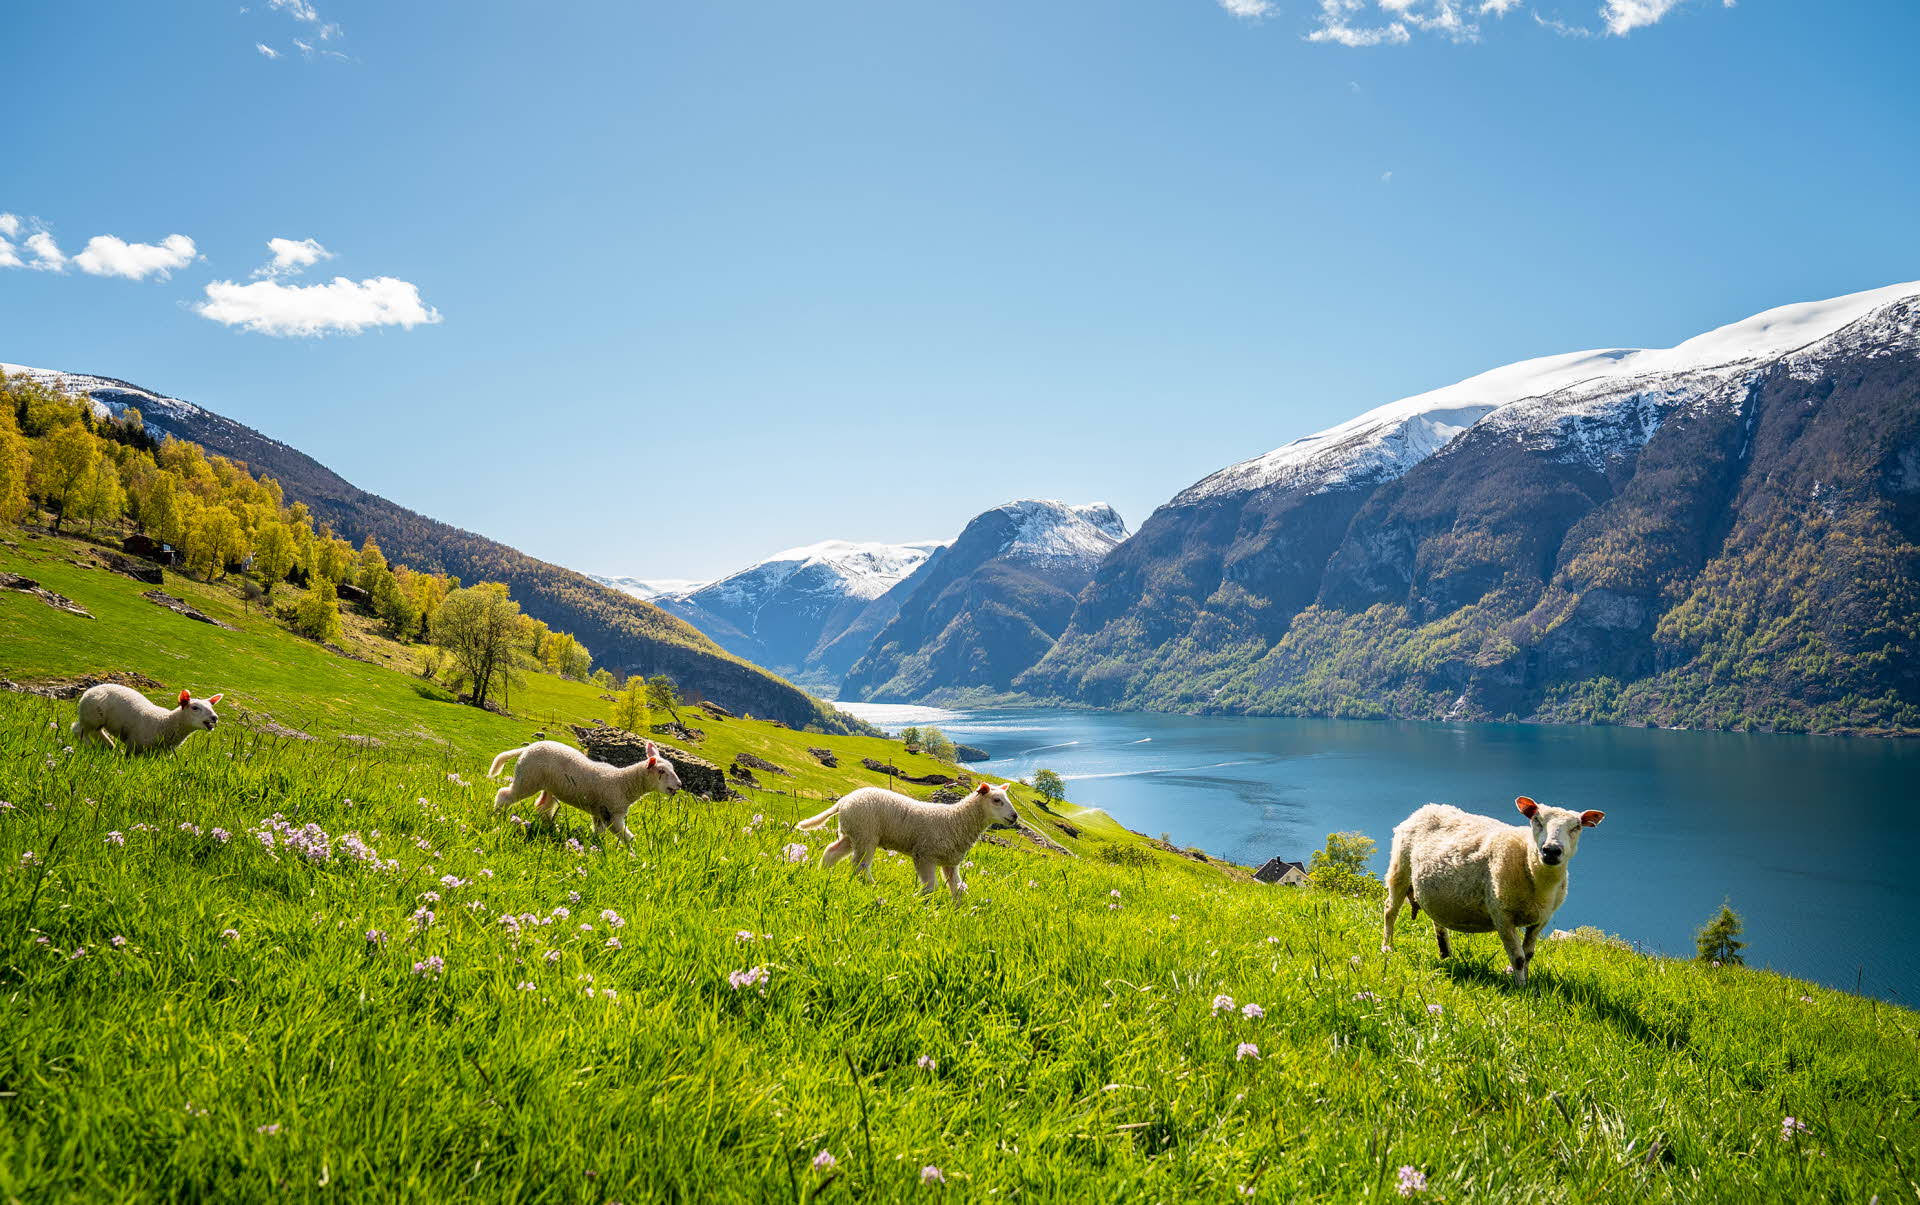 绵羊正在盛开花朵的草地上吃草，可以看到被列入世界遗产名录的艾于兰峡湾和白雪覆盖的山顶